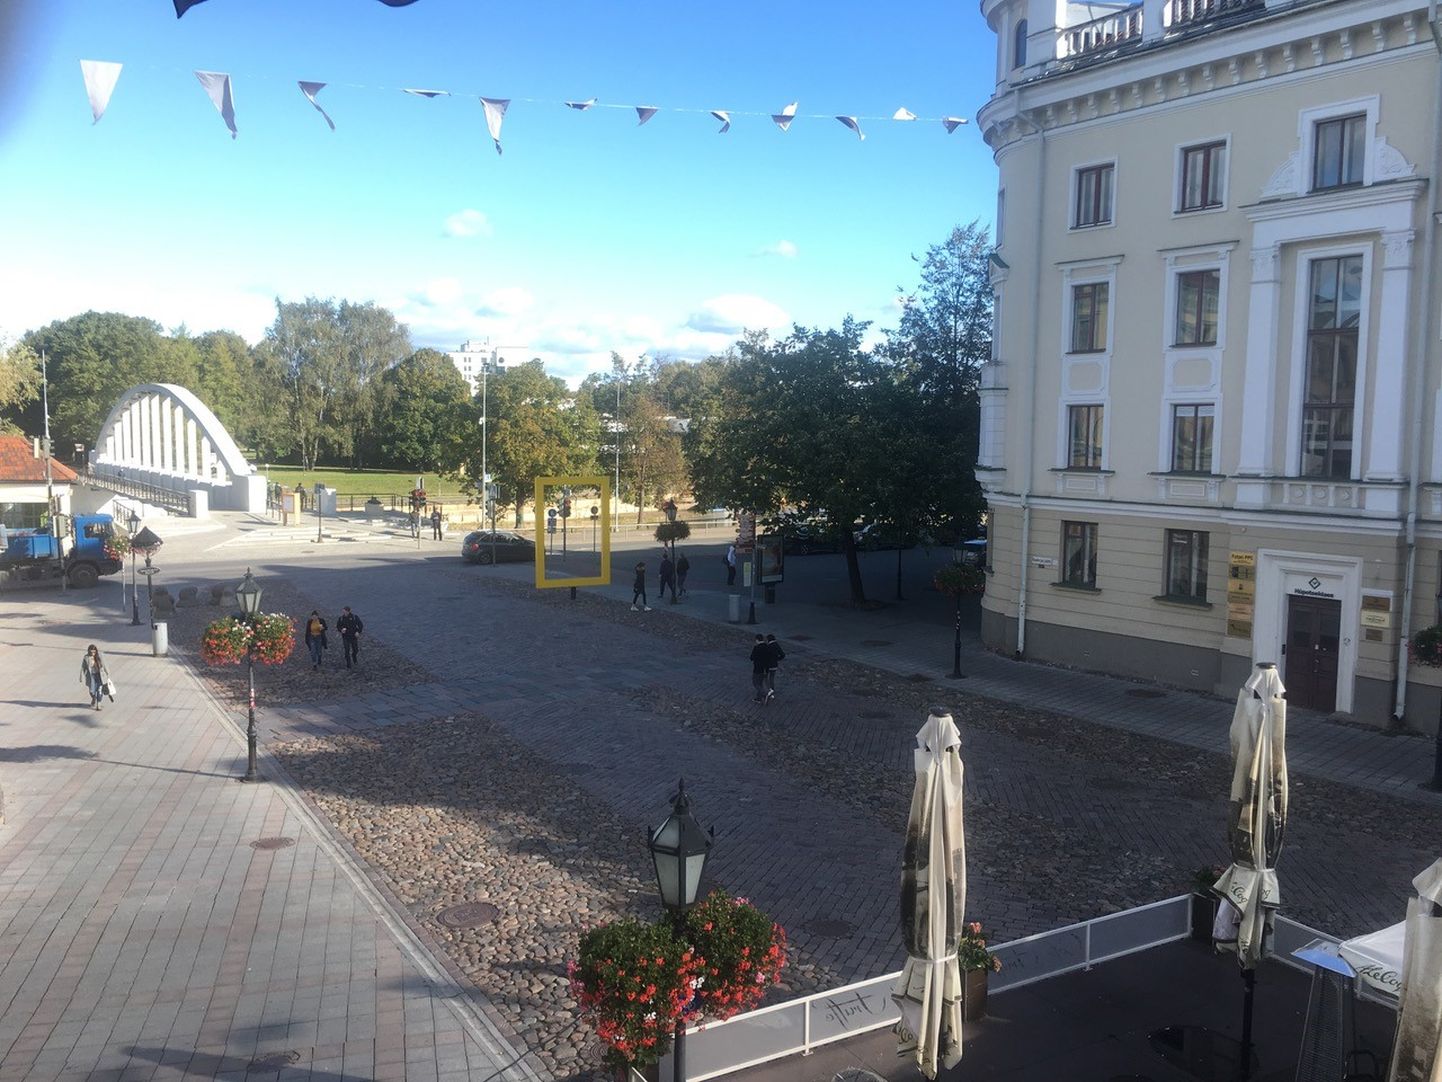 Tallinna tehnikaülikool (TalTech) avab Tartu raekoja platsil reede üheks päevaks Eesti suurima põgenemislabürindi.